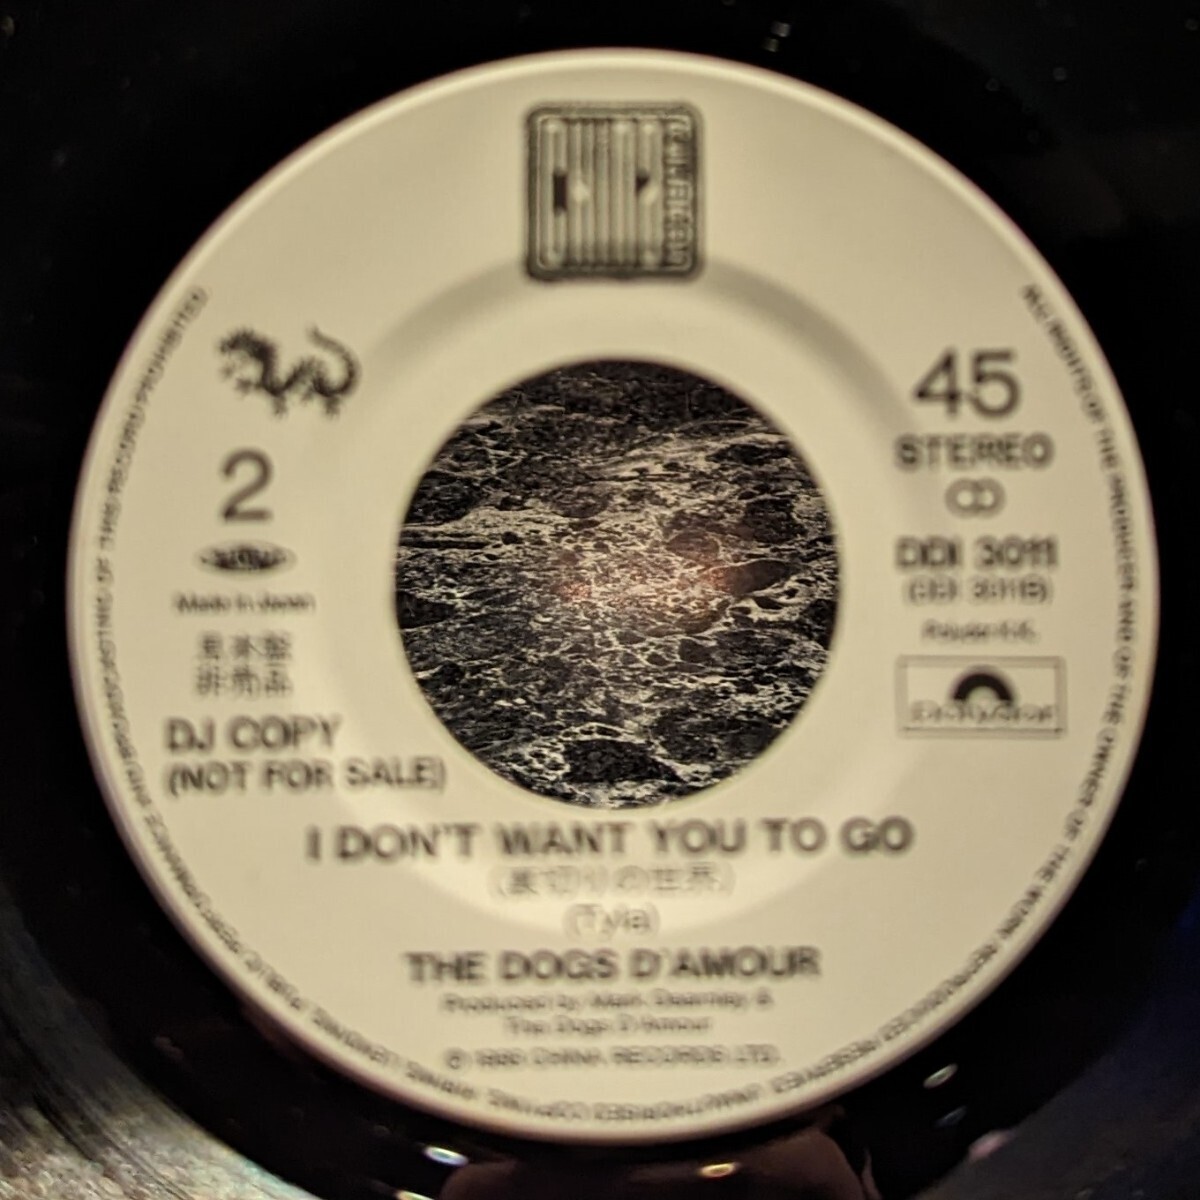 ☆プロモ・オンリー☆ザ・ドッグス・ダムール The Dogs D'Amour #非売品 Promo Only EP Sample サンプル 見本盤 白ラベル レーベル グラム_画像4